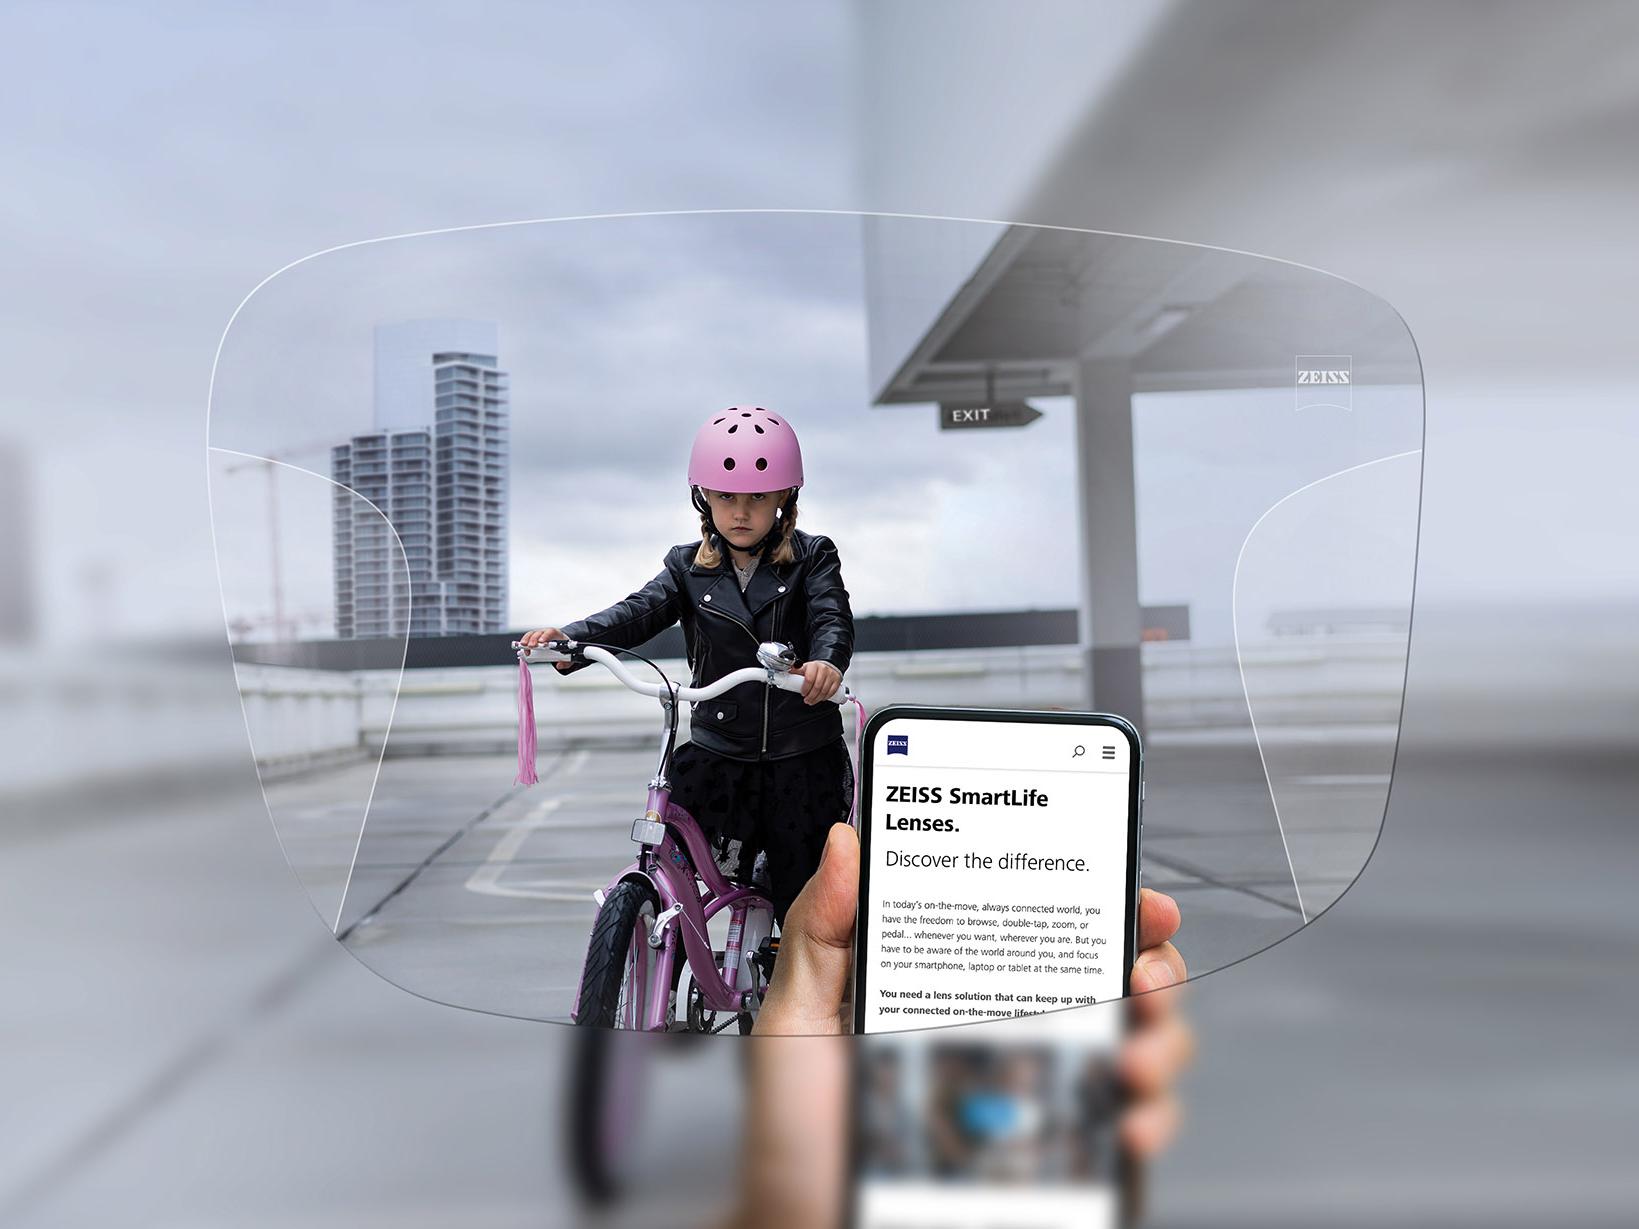 자이스 스마트라이프 누진 렌즈를 통해 휴대폰을 보는 사람. 배경에는 분홍색 보호 헬멧을 쓰고 자전거를 타는 소녀가 보인다. 